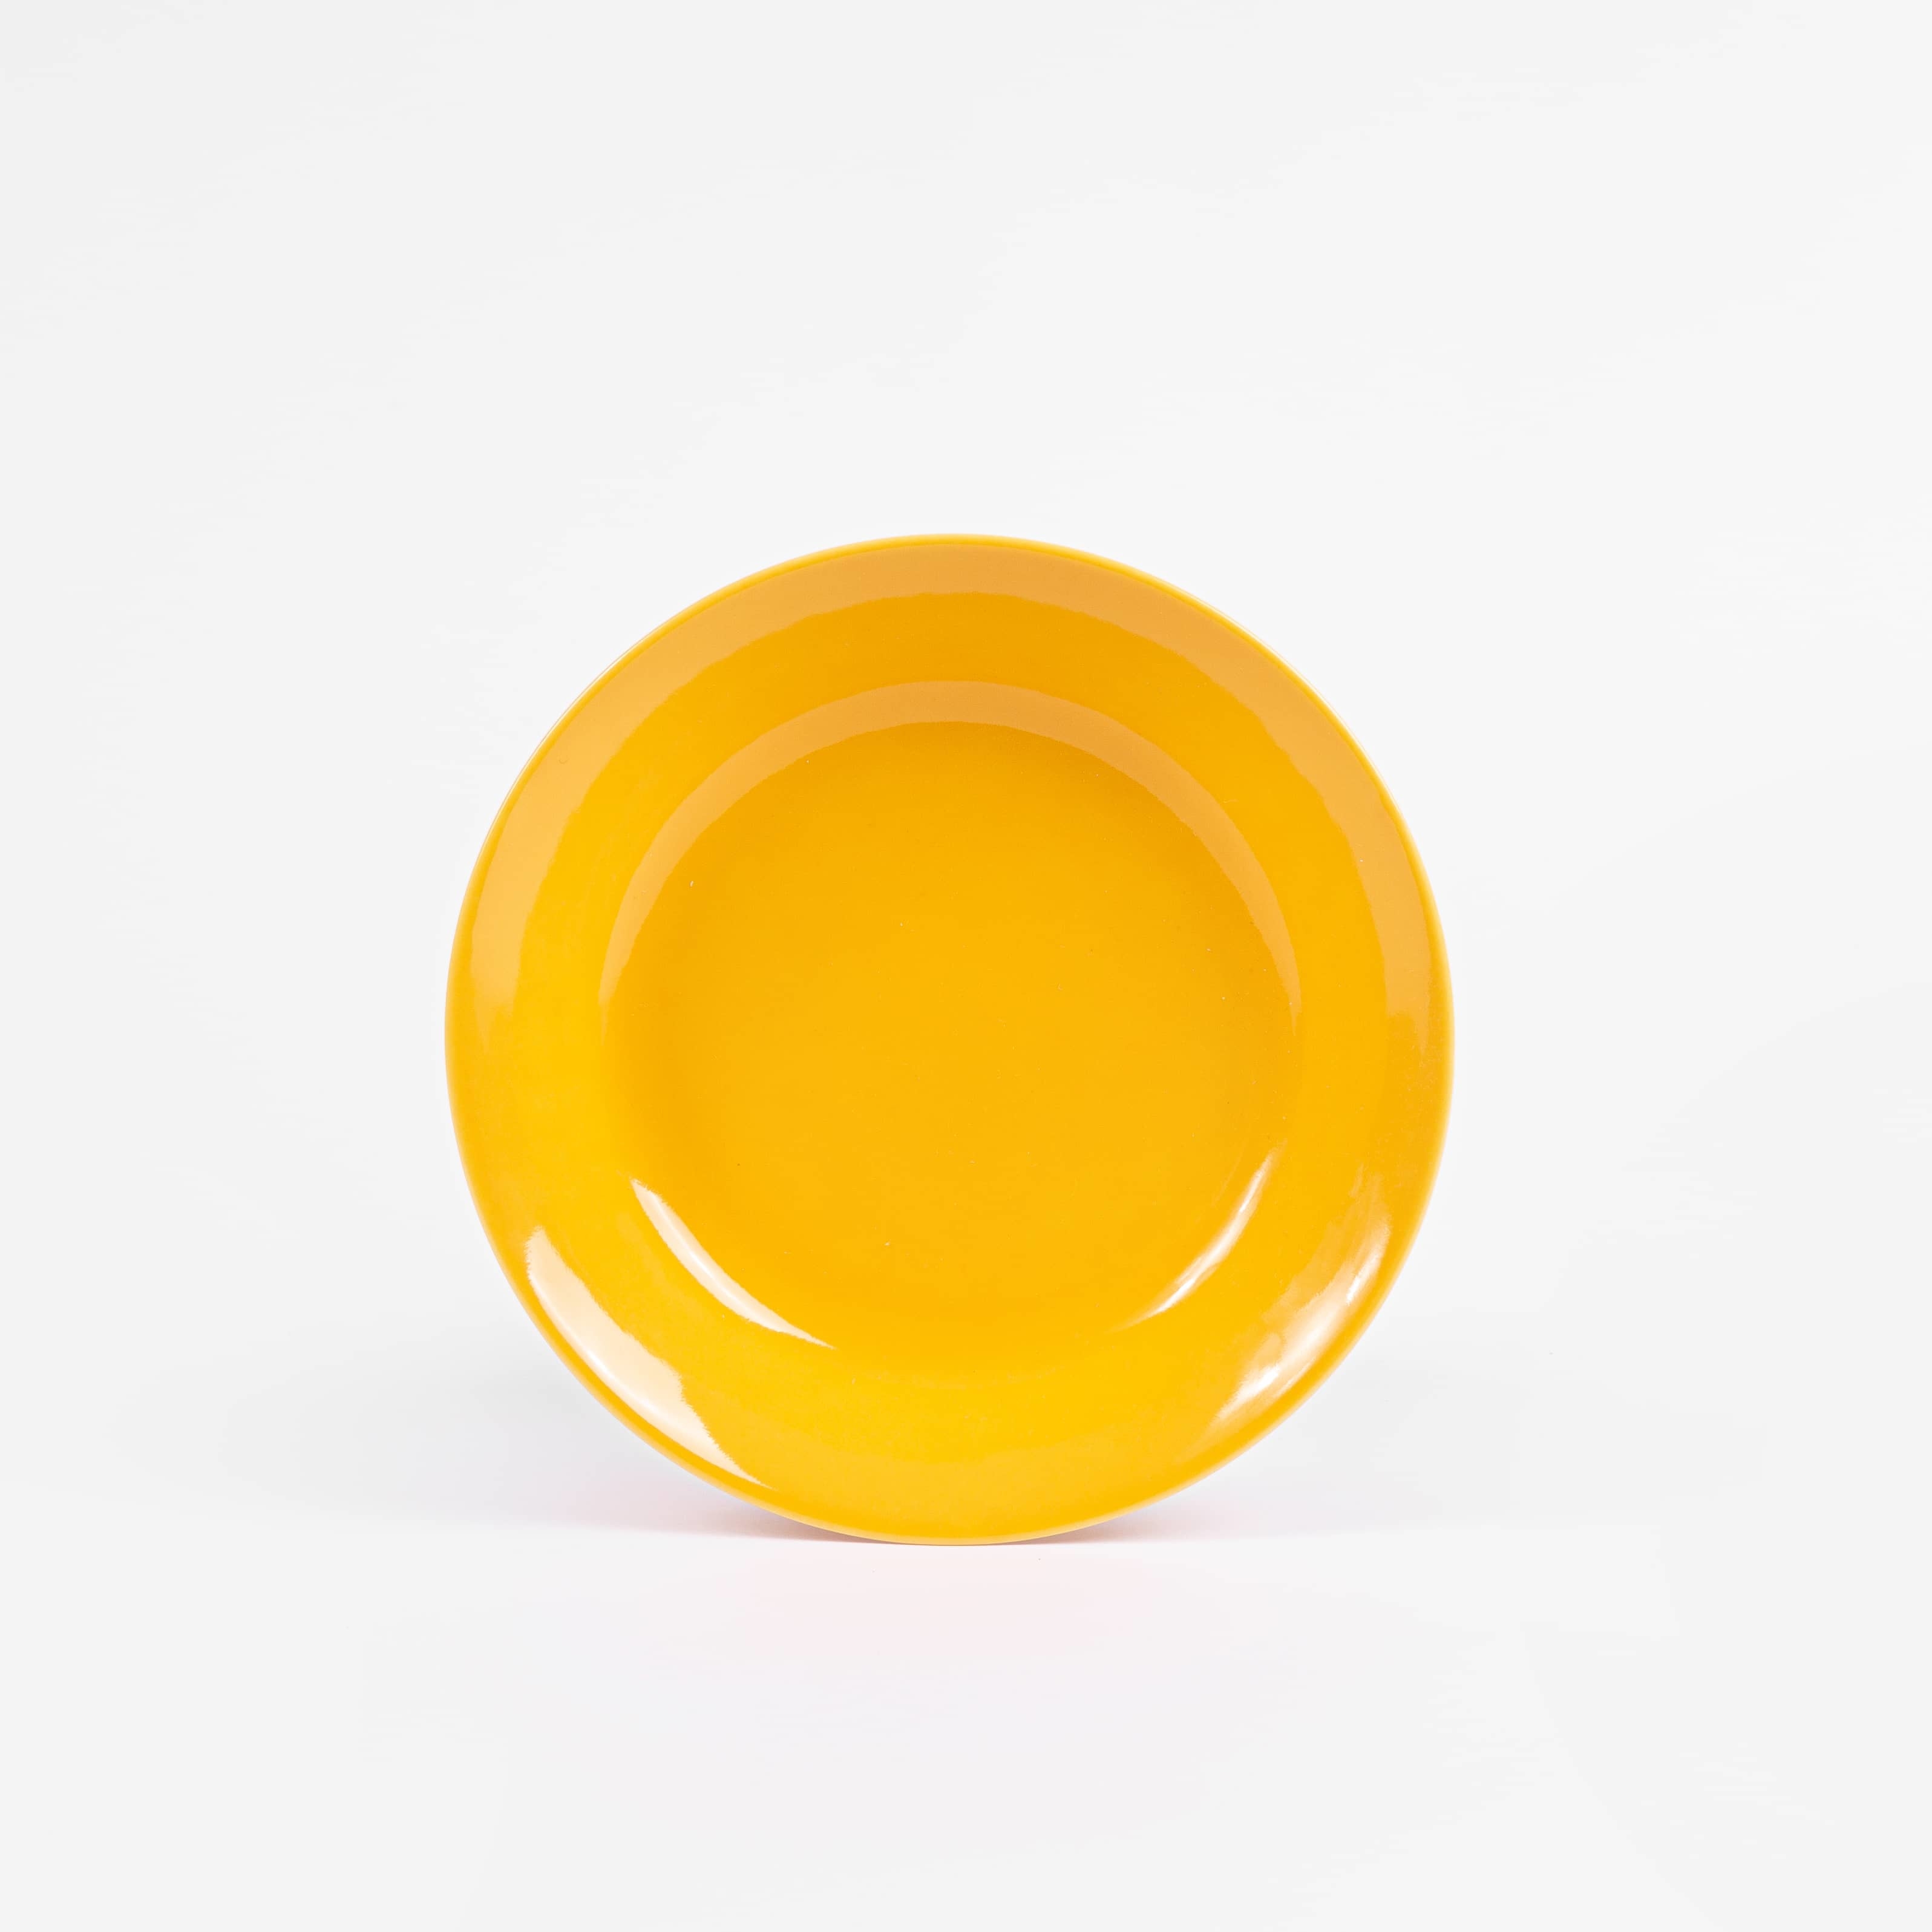 L'assiette creuse ronde en porcelaine - Jaune moutarde - Intemporelle